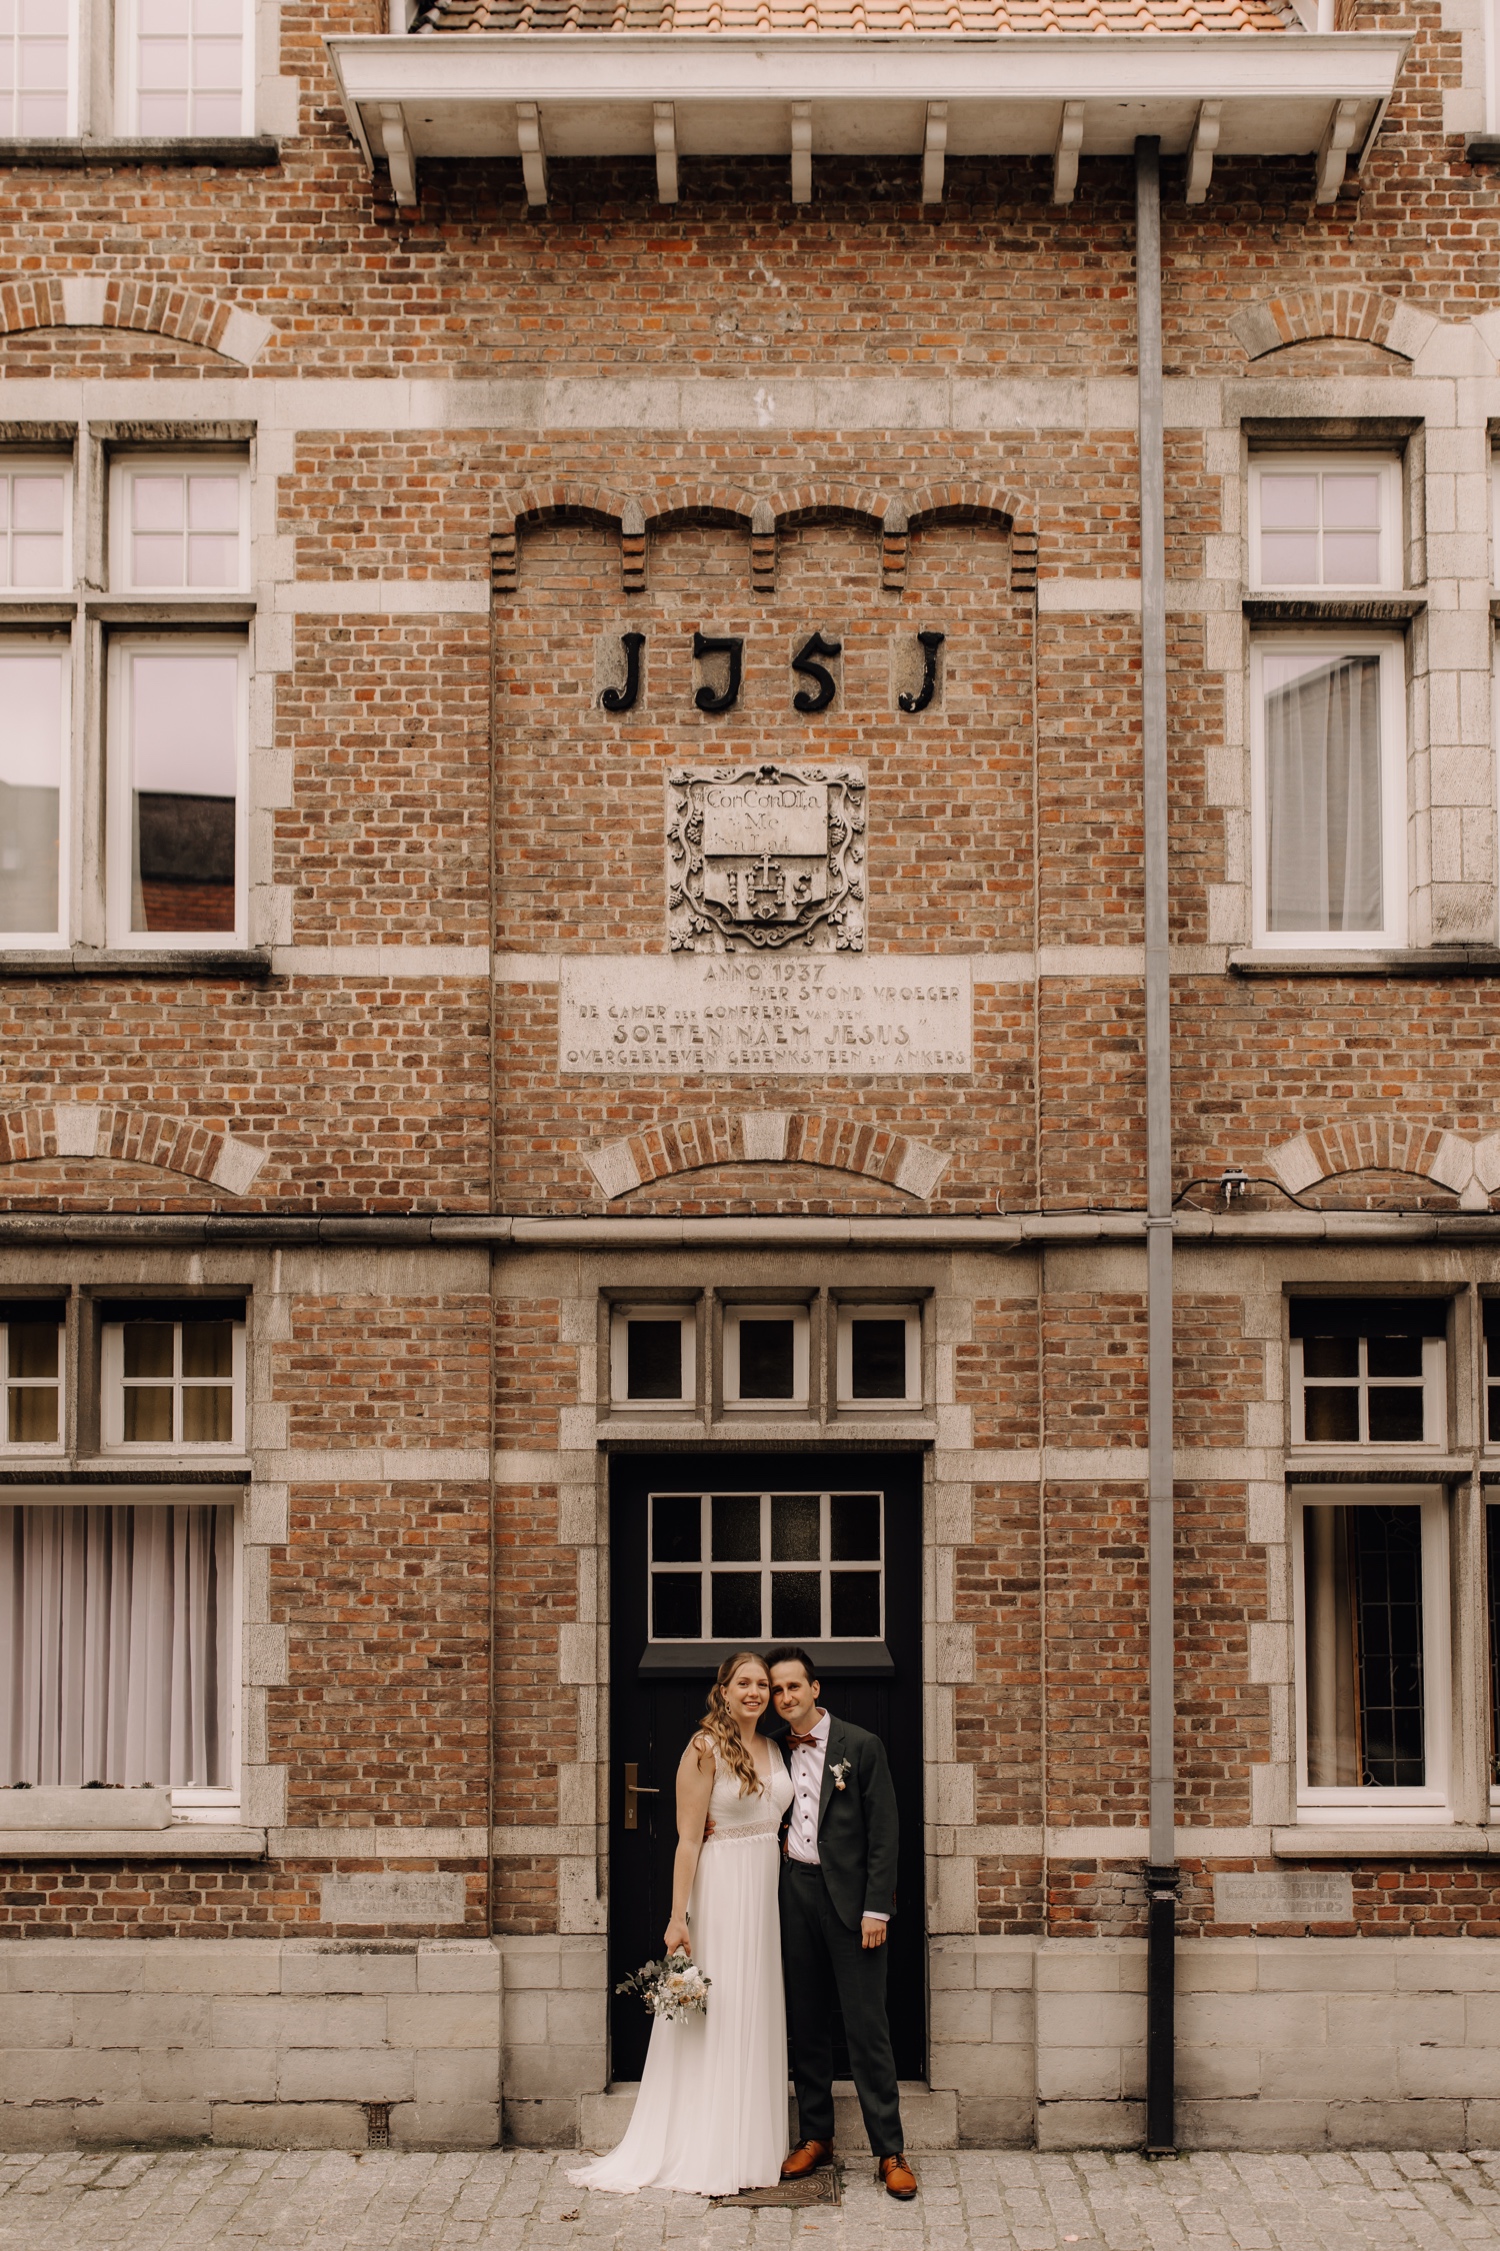 Huwelijksfotograaf Limburg - bruidspaar poseert voor stadswoning in Lokeren